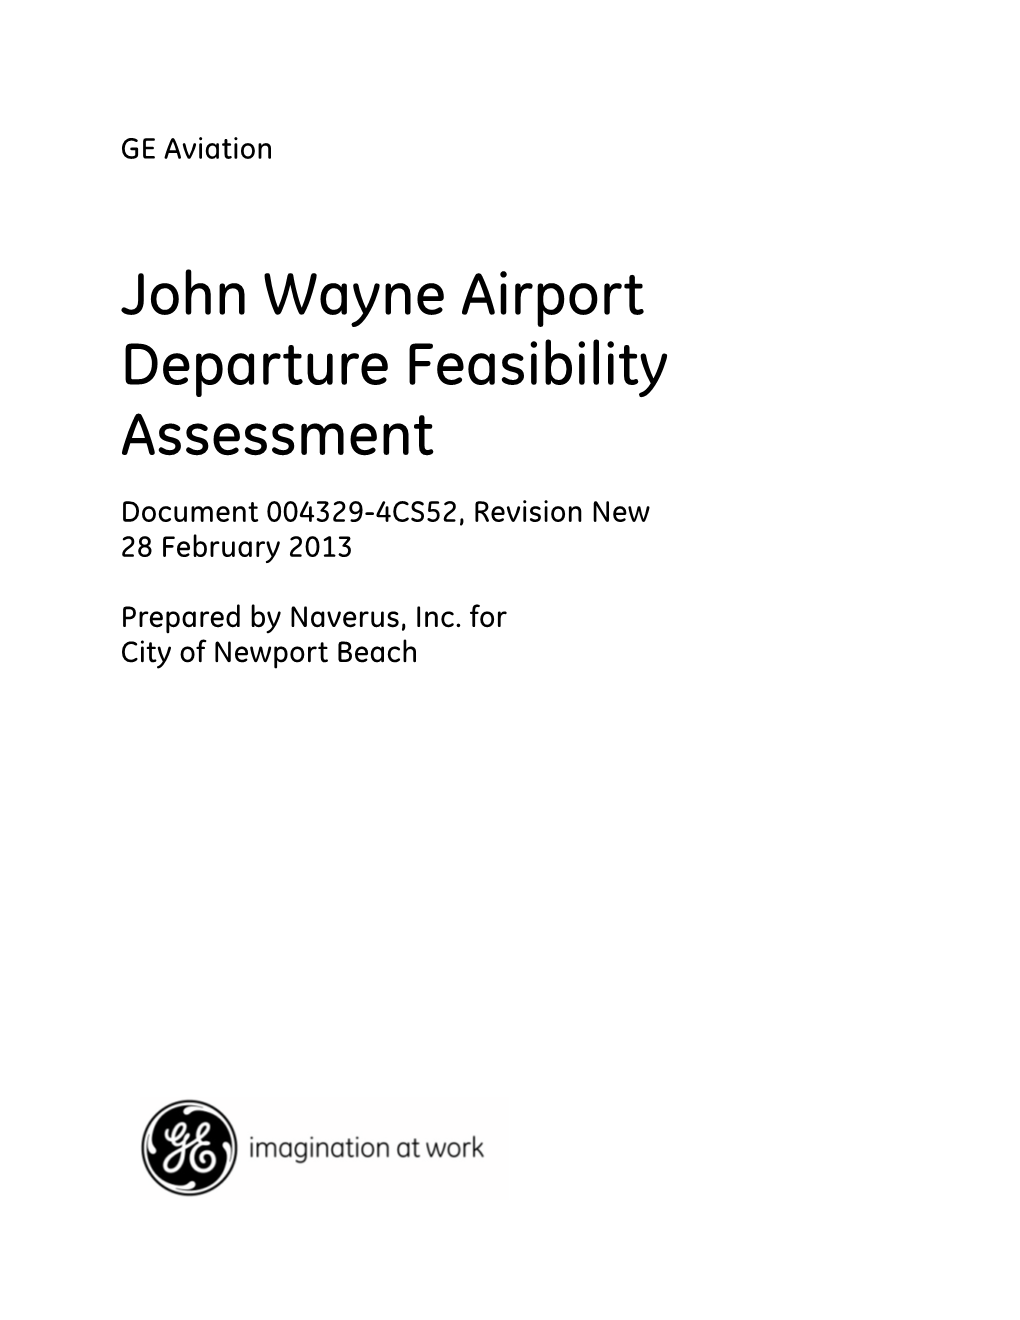 John Wayne Airport Departure Feasibility Assessment